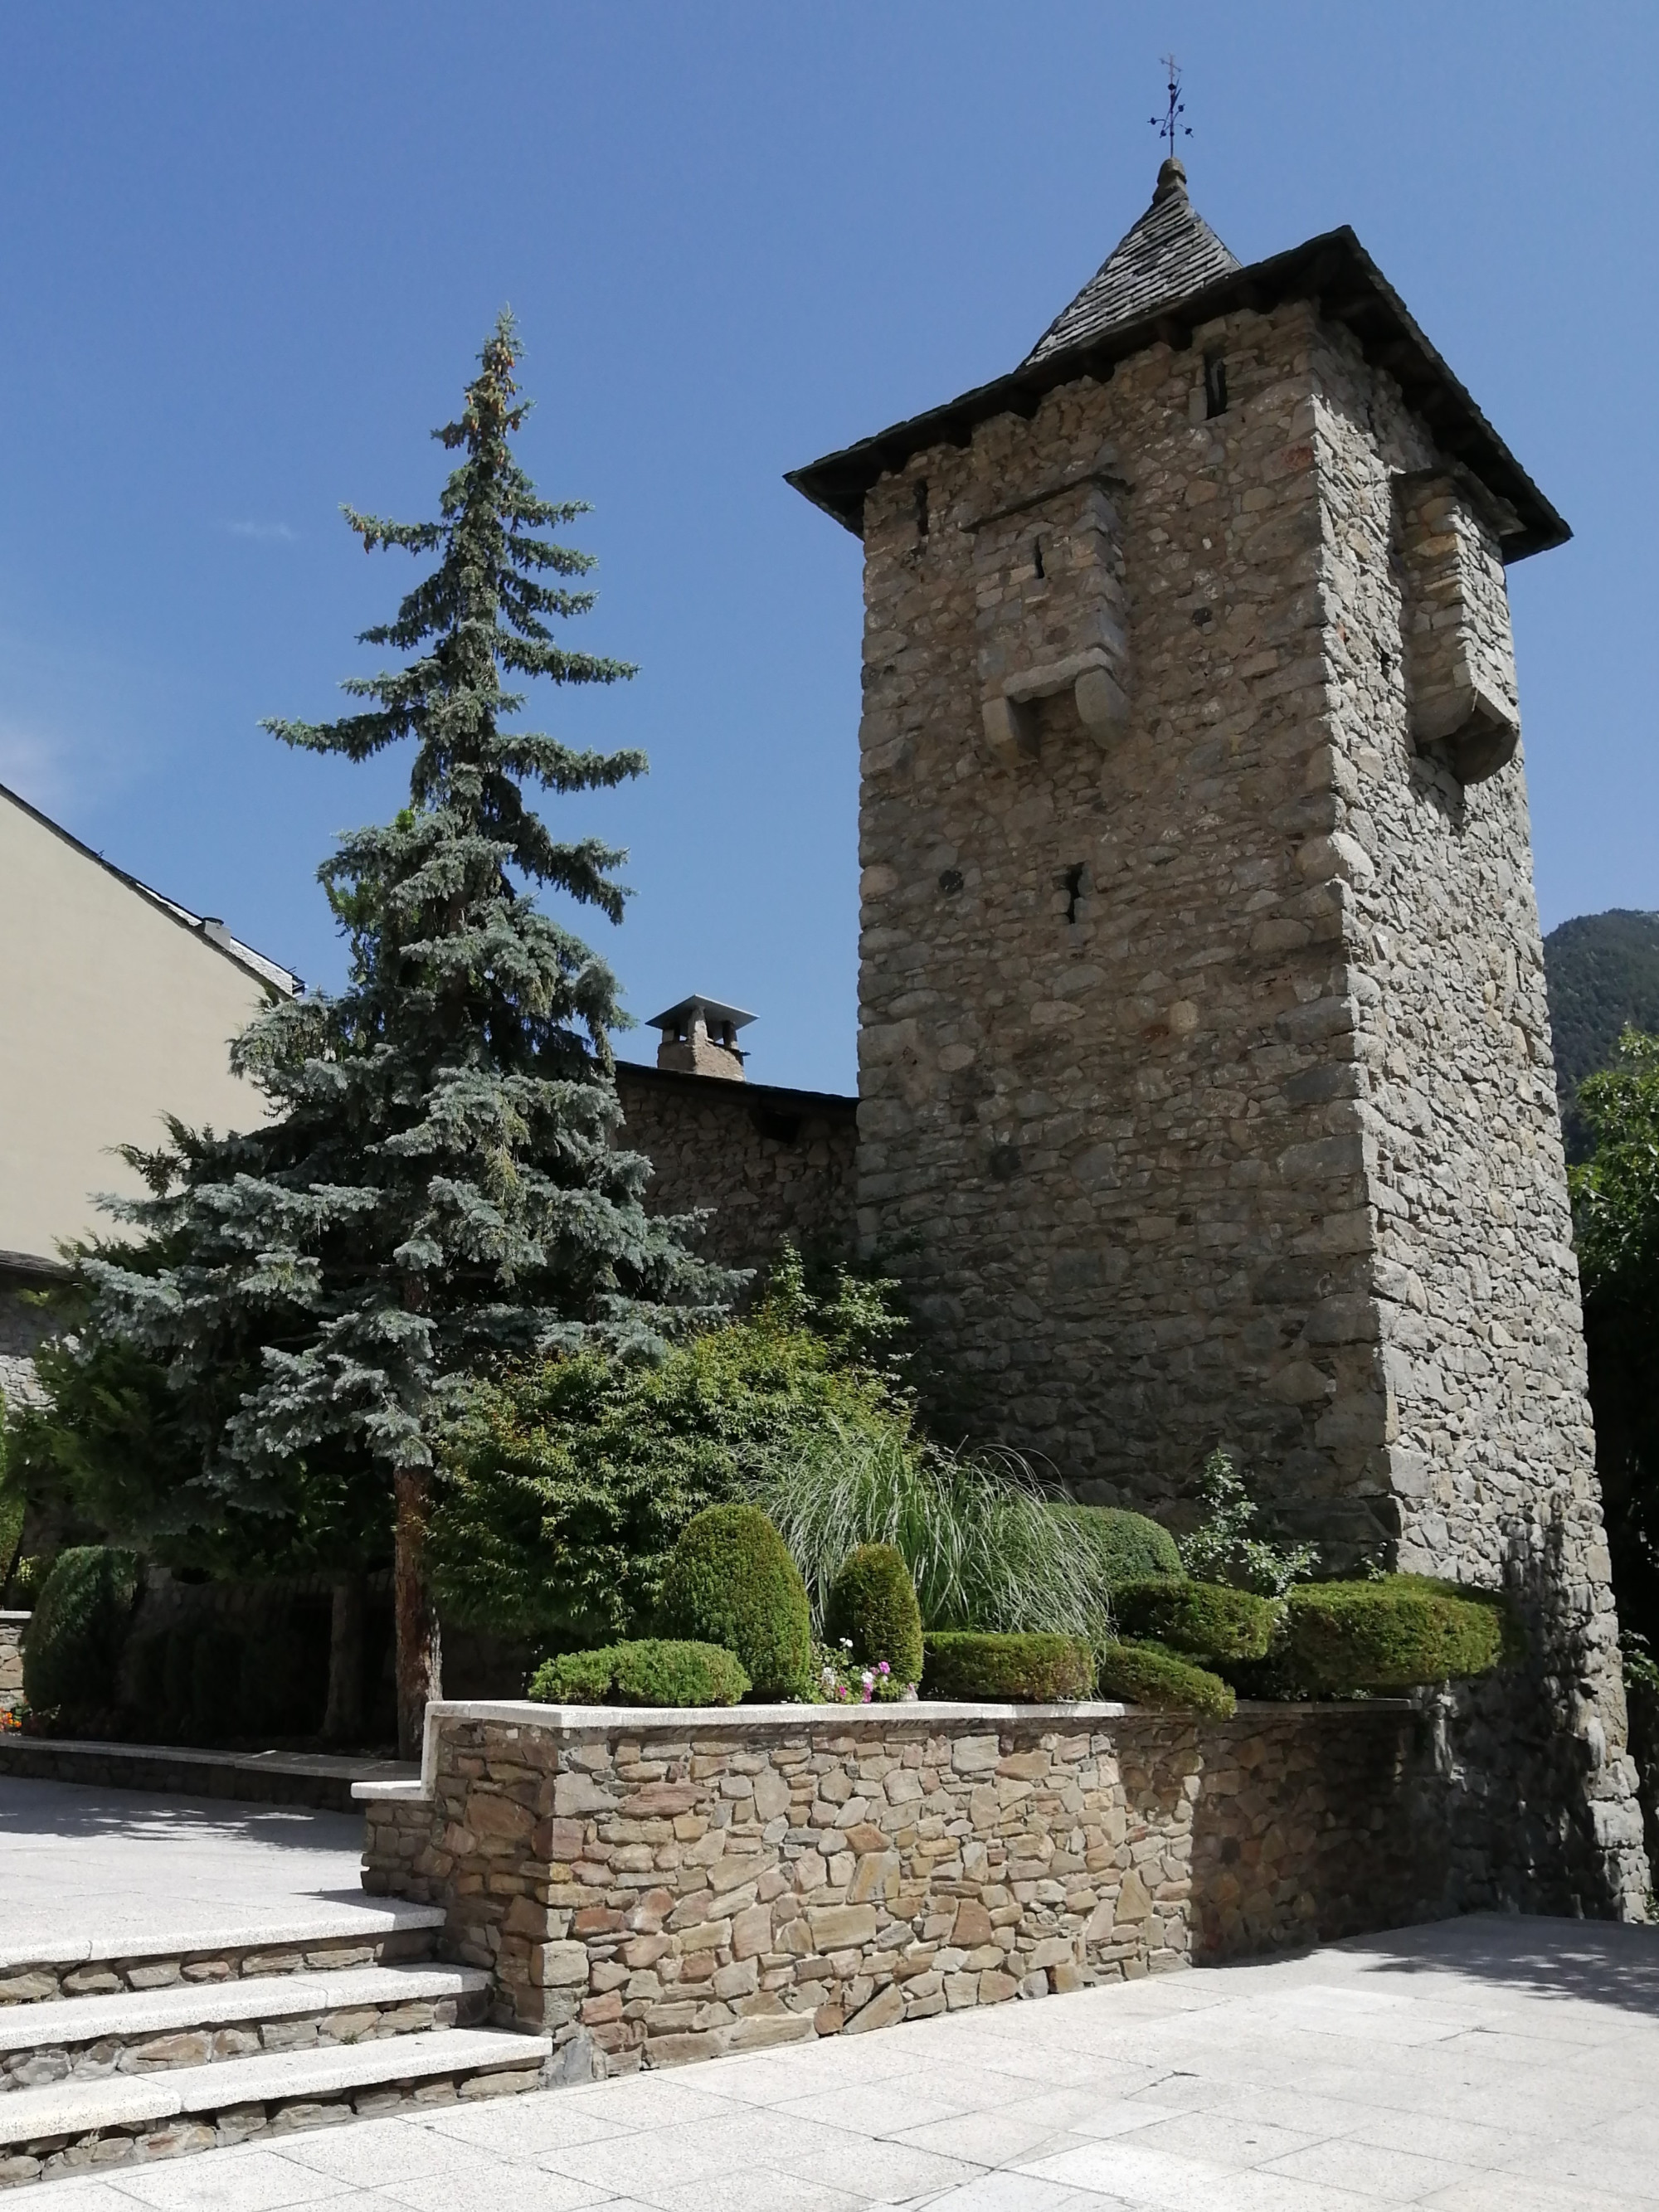 Casa de la Vall<br/>
Museum